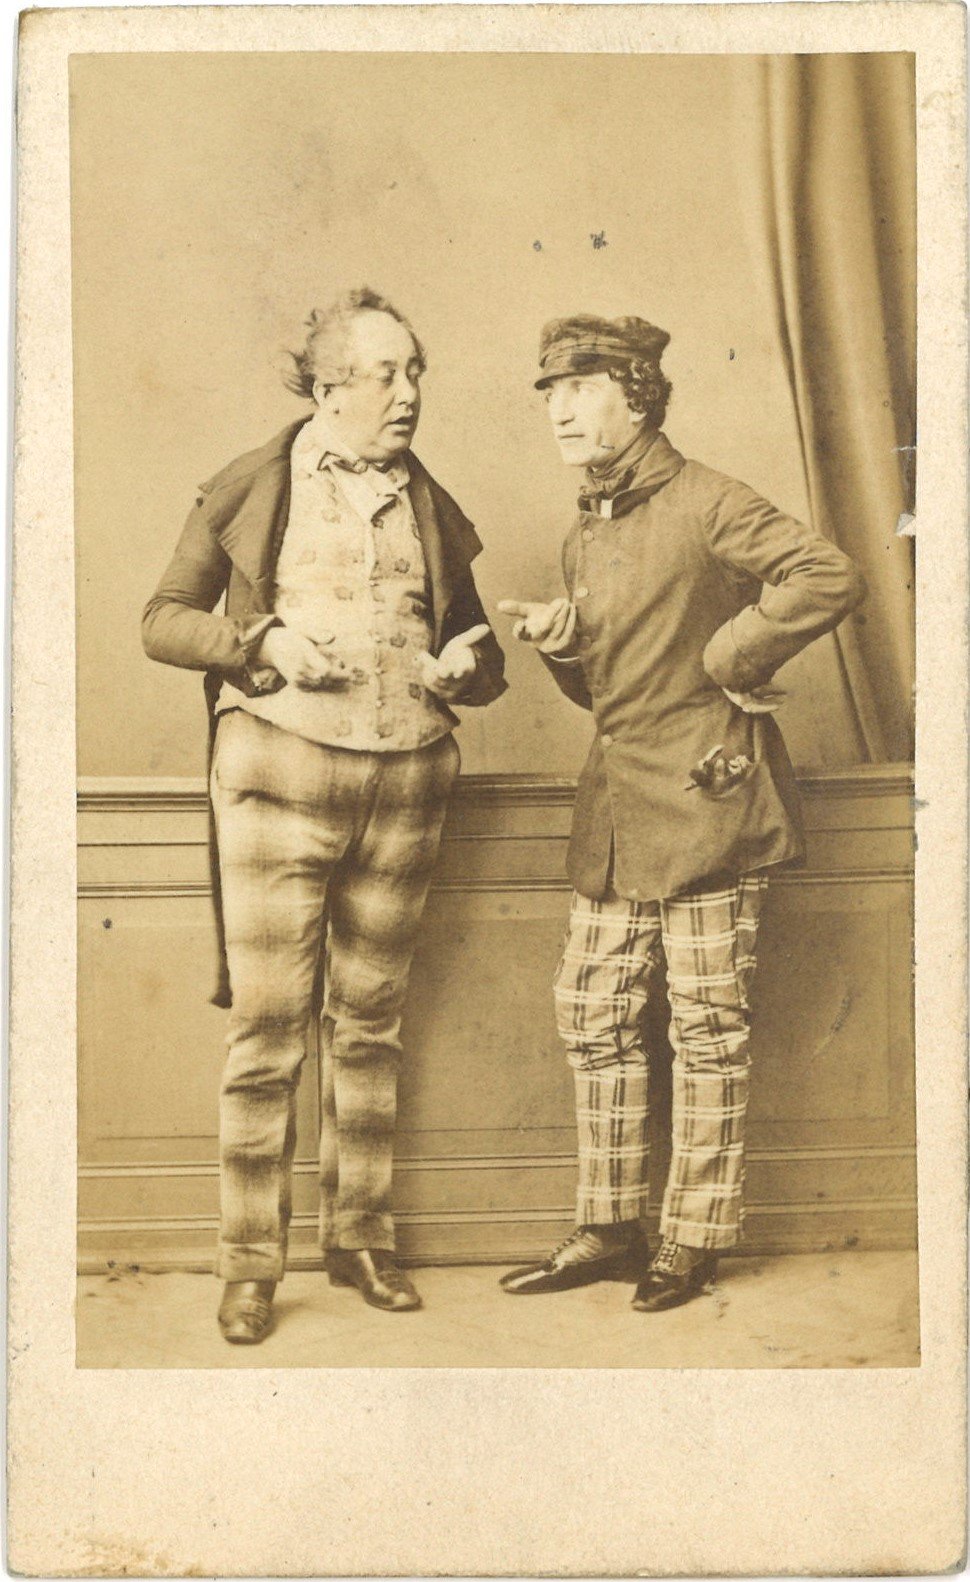 Neumann, August (1824-1894), Schauspieler, und Helmerding, Karl (1822-1899), Schauspieler (Landesgeschichtliche Vereinigung für die Mark Brandenburg e.V., Archiv CC BY)